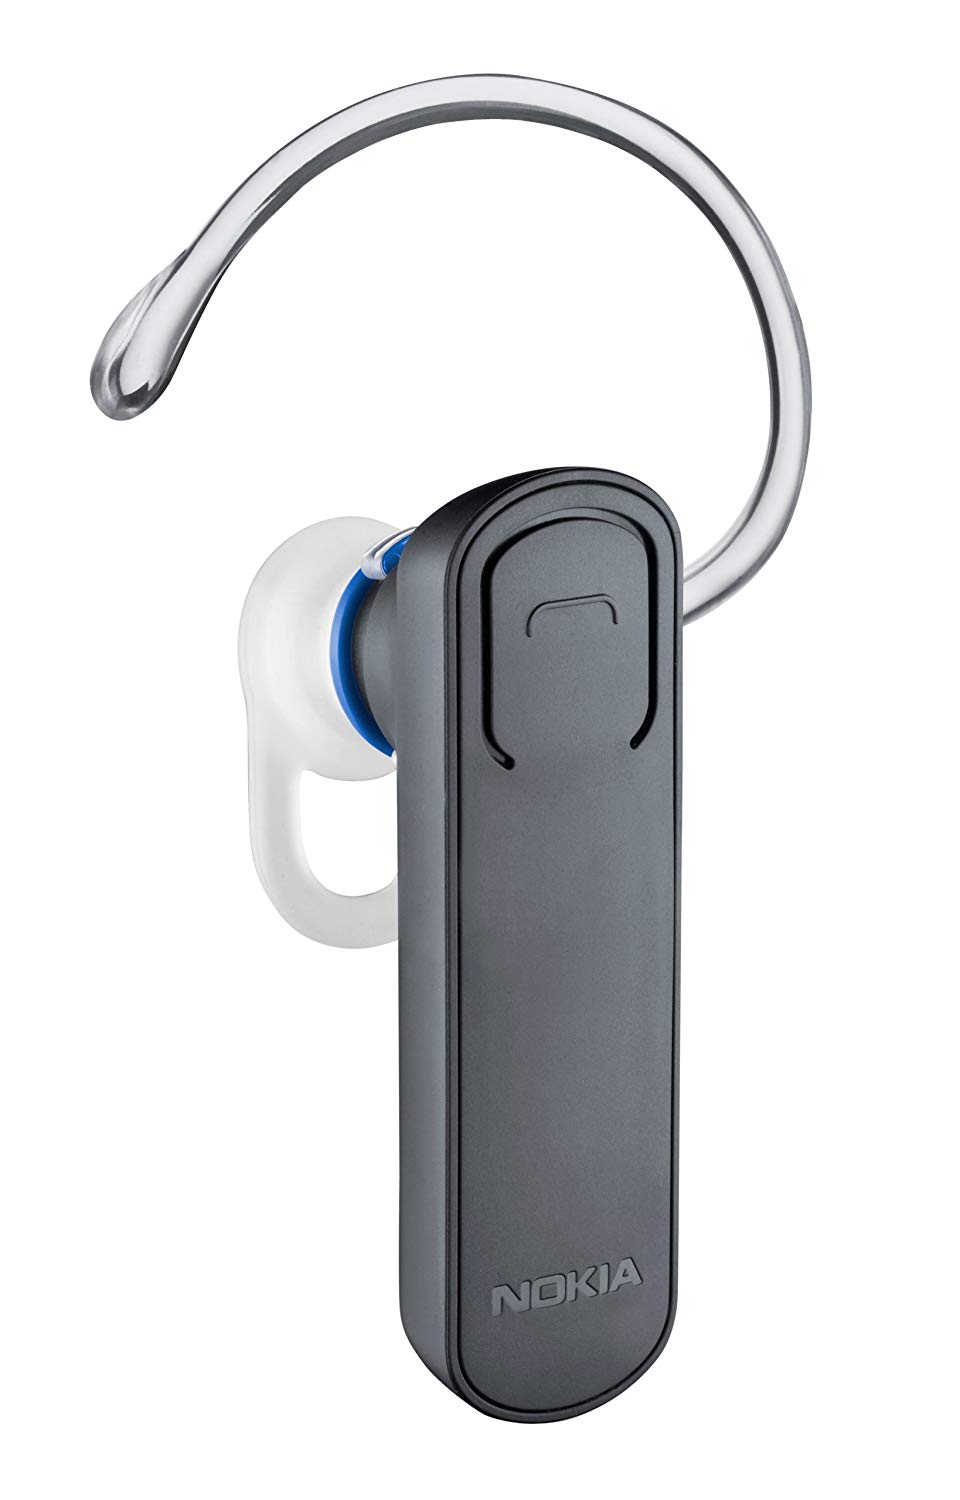 Oreillette/Headset Bluetooth Nokia BH-108 (Pierre)